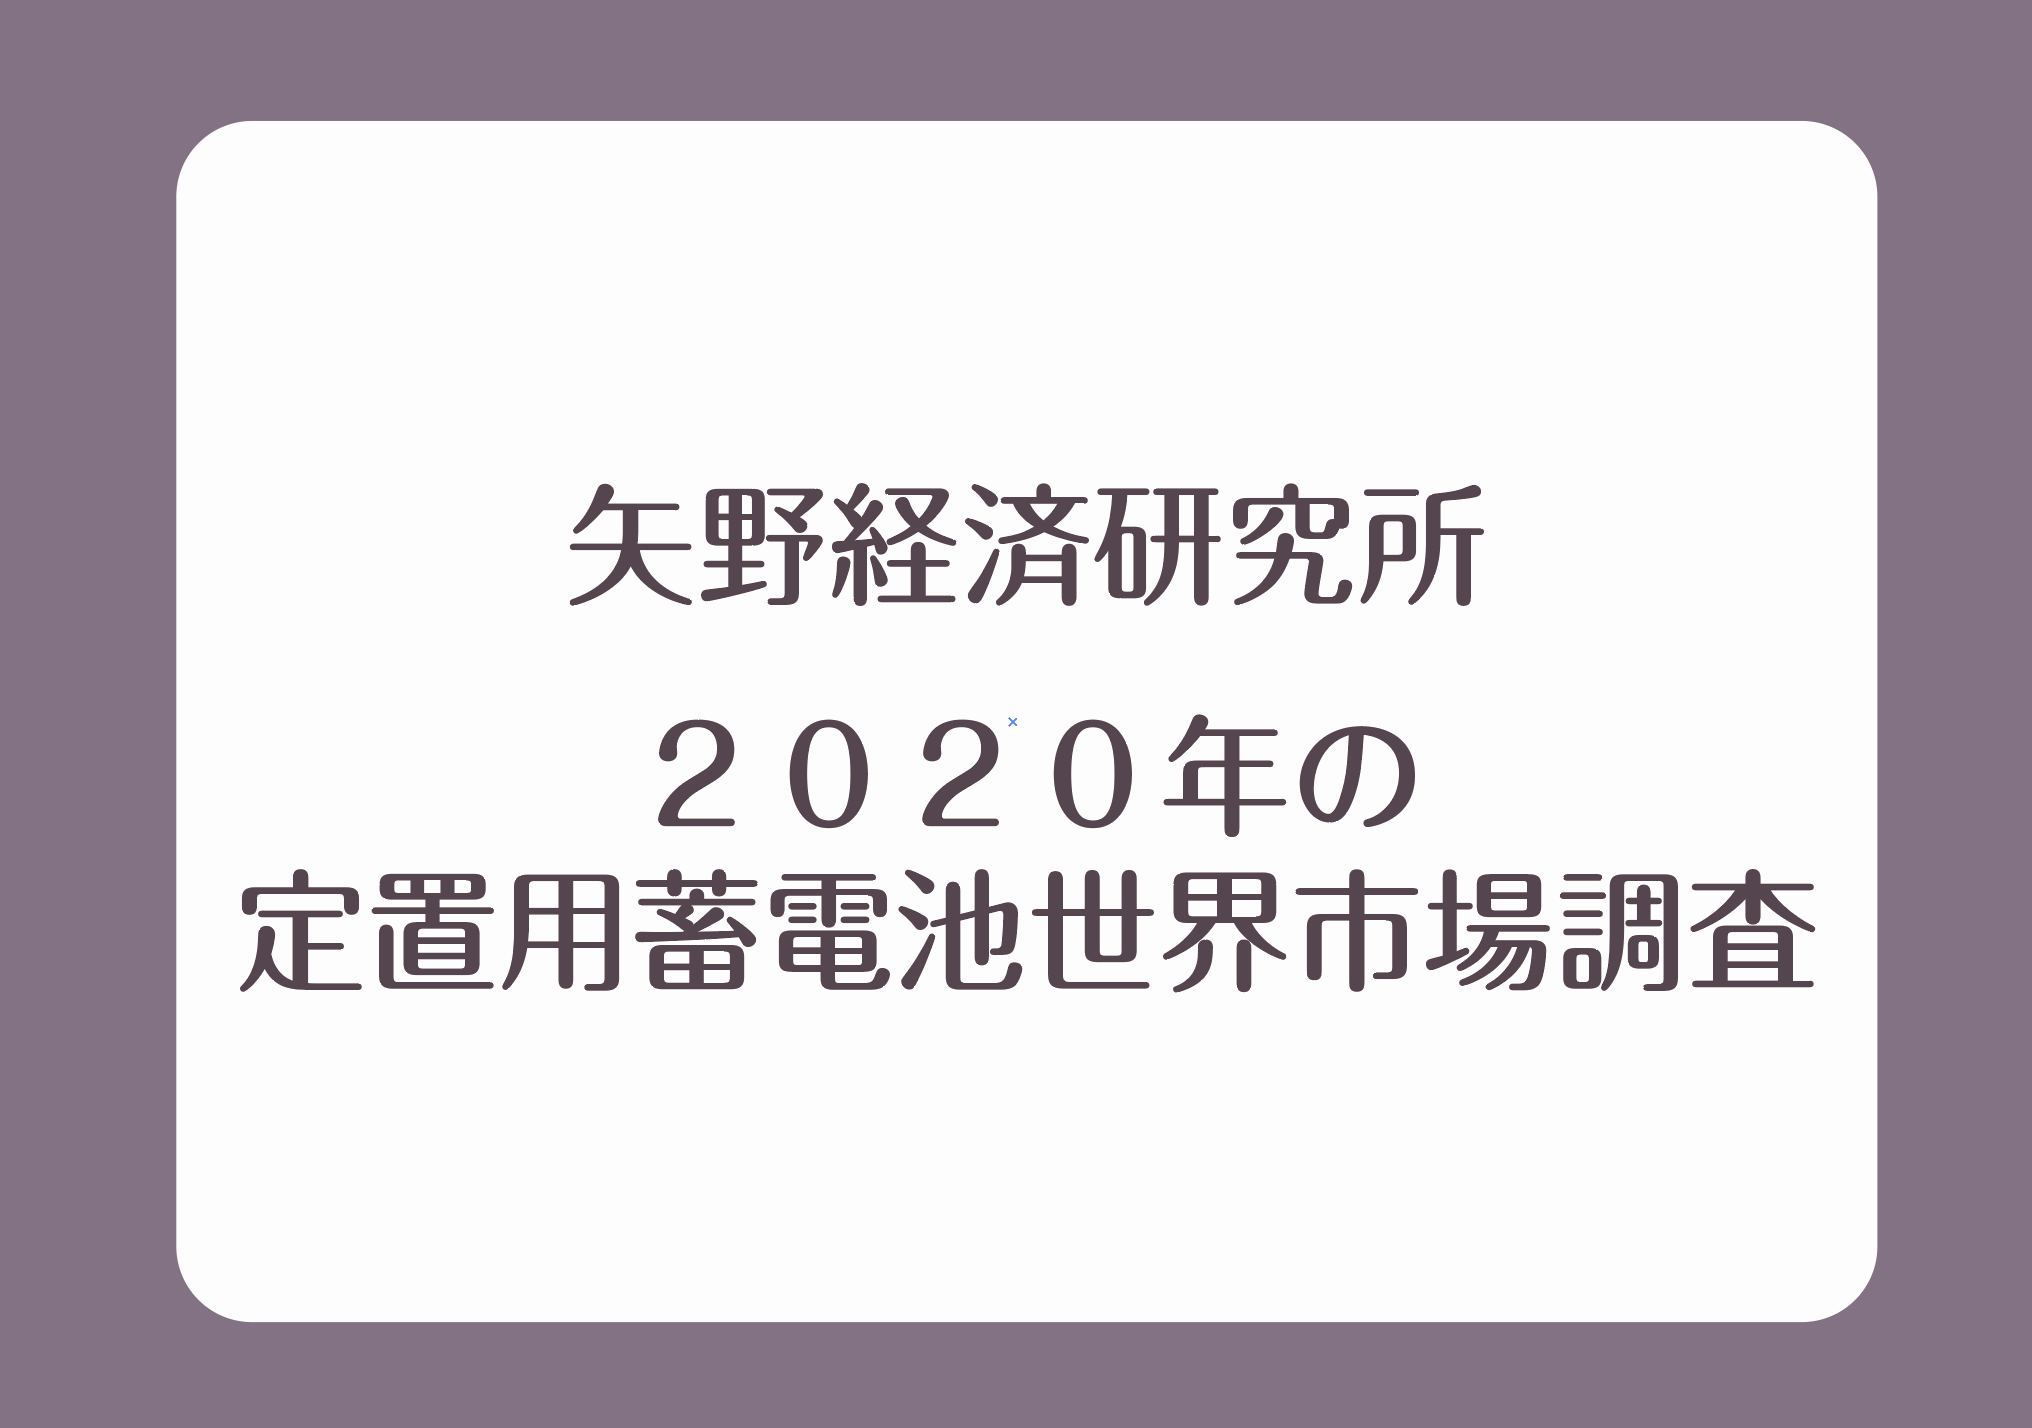 矢野経済研究所 2020年の定置用蓄電池世界市場調査の画像